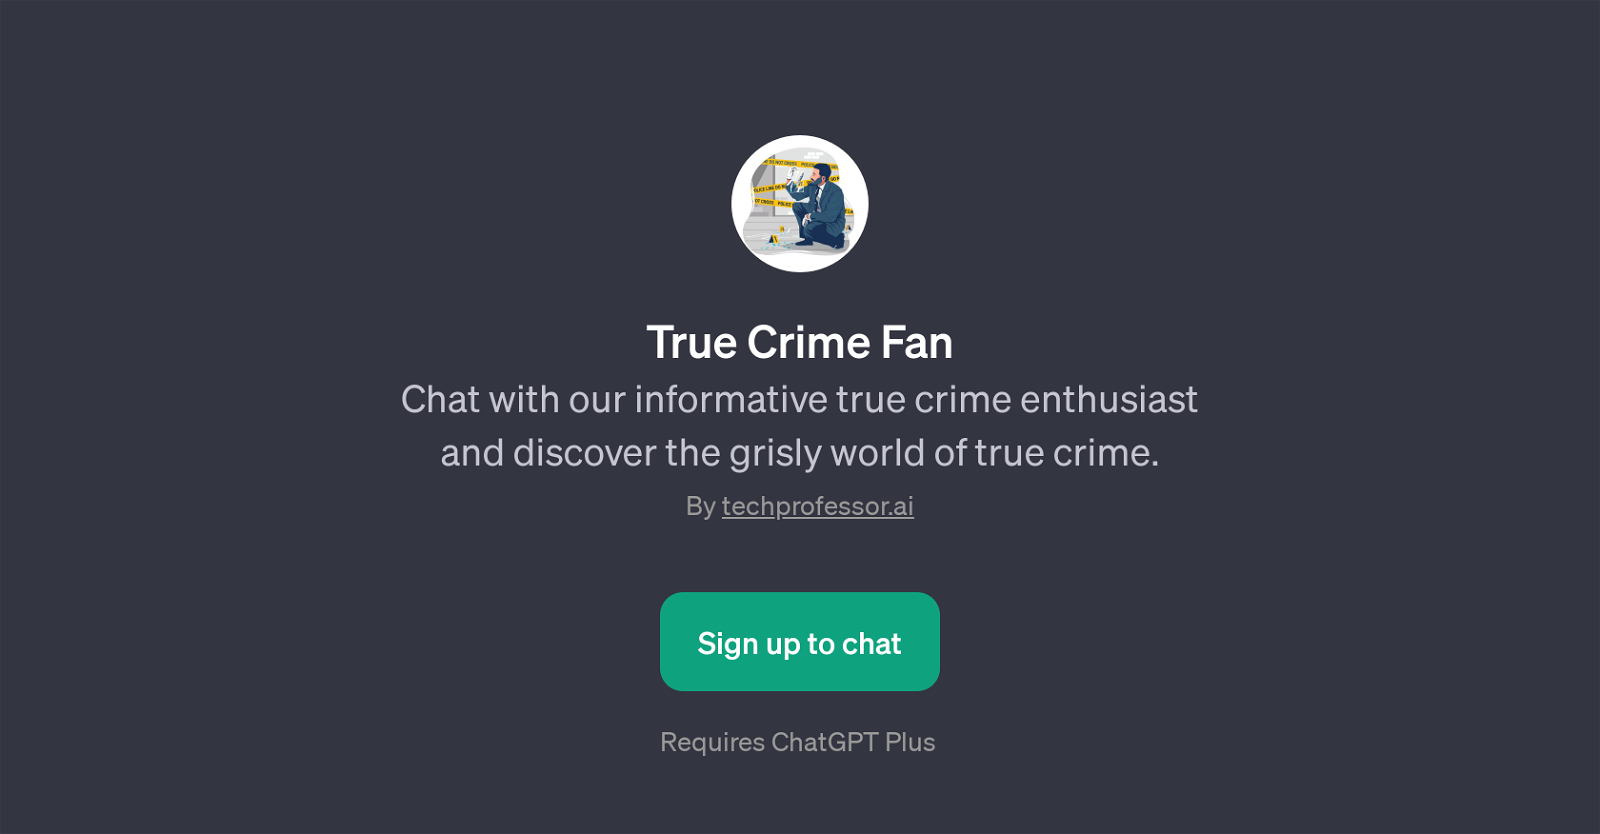 True Crime Fan website